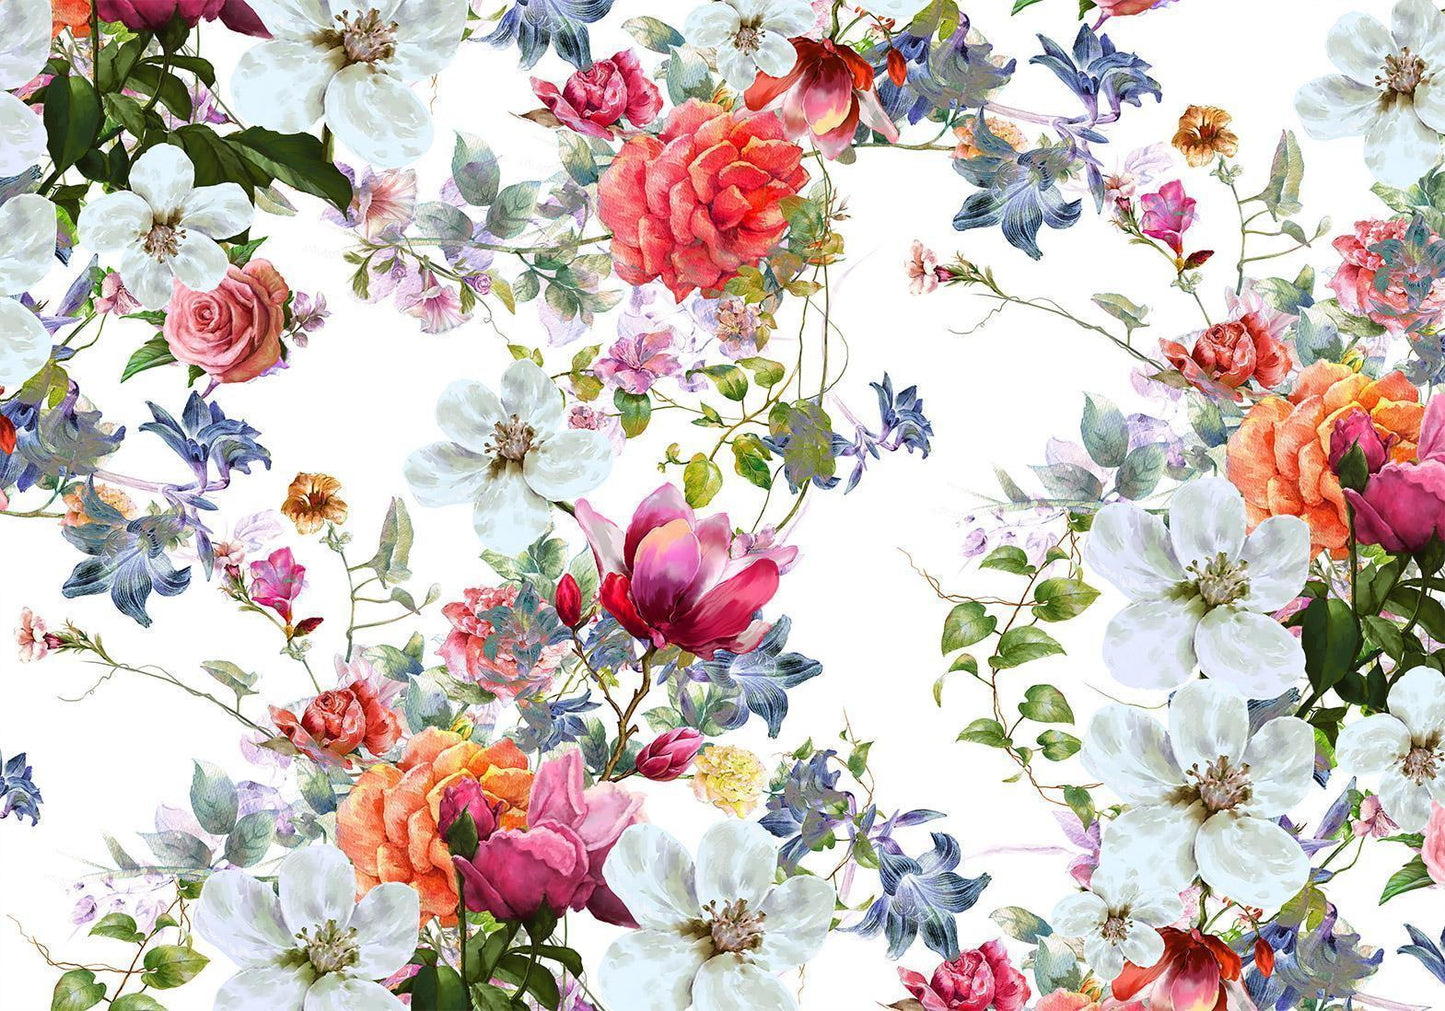 Self-adhesive photo wallpaper - Multi-Colored Bouquets